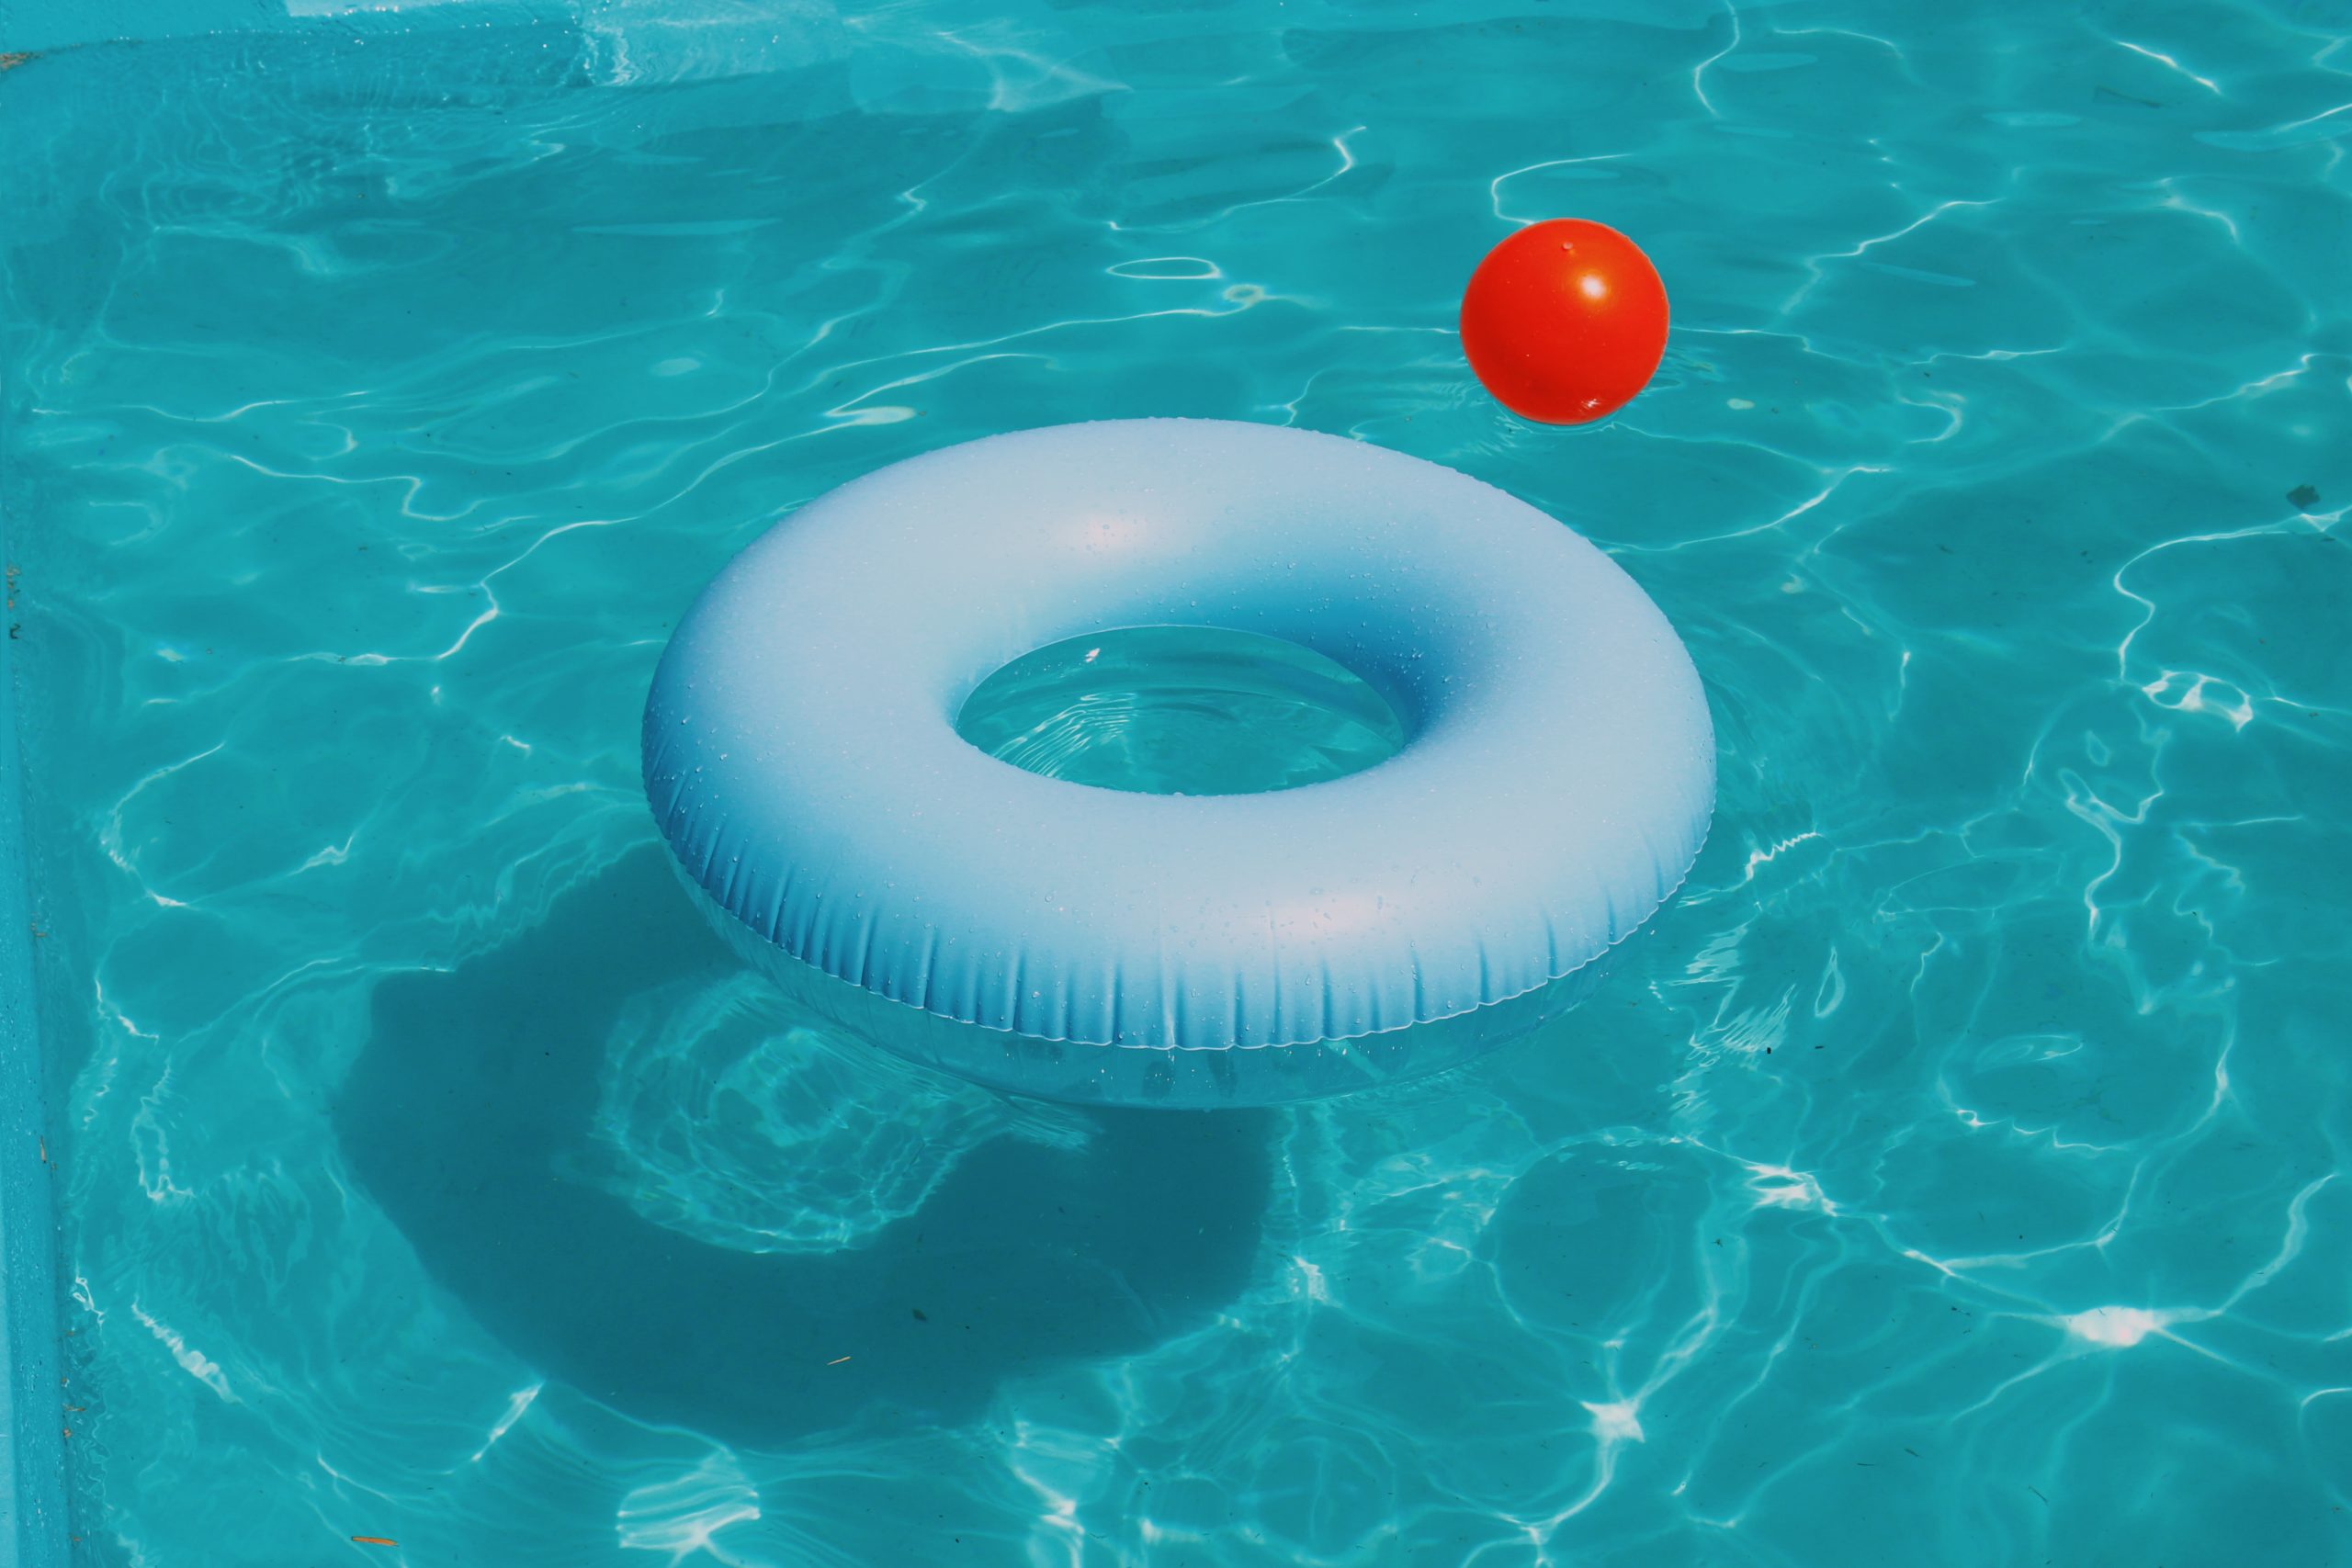 Elementos de seguridad para evitar accidentes en la piscina | SafePool365